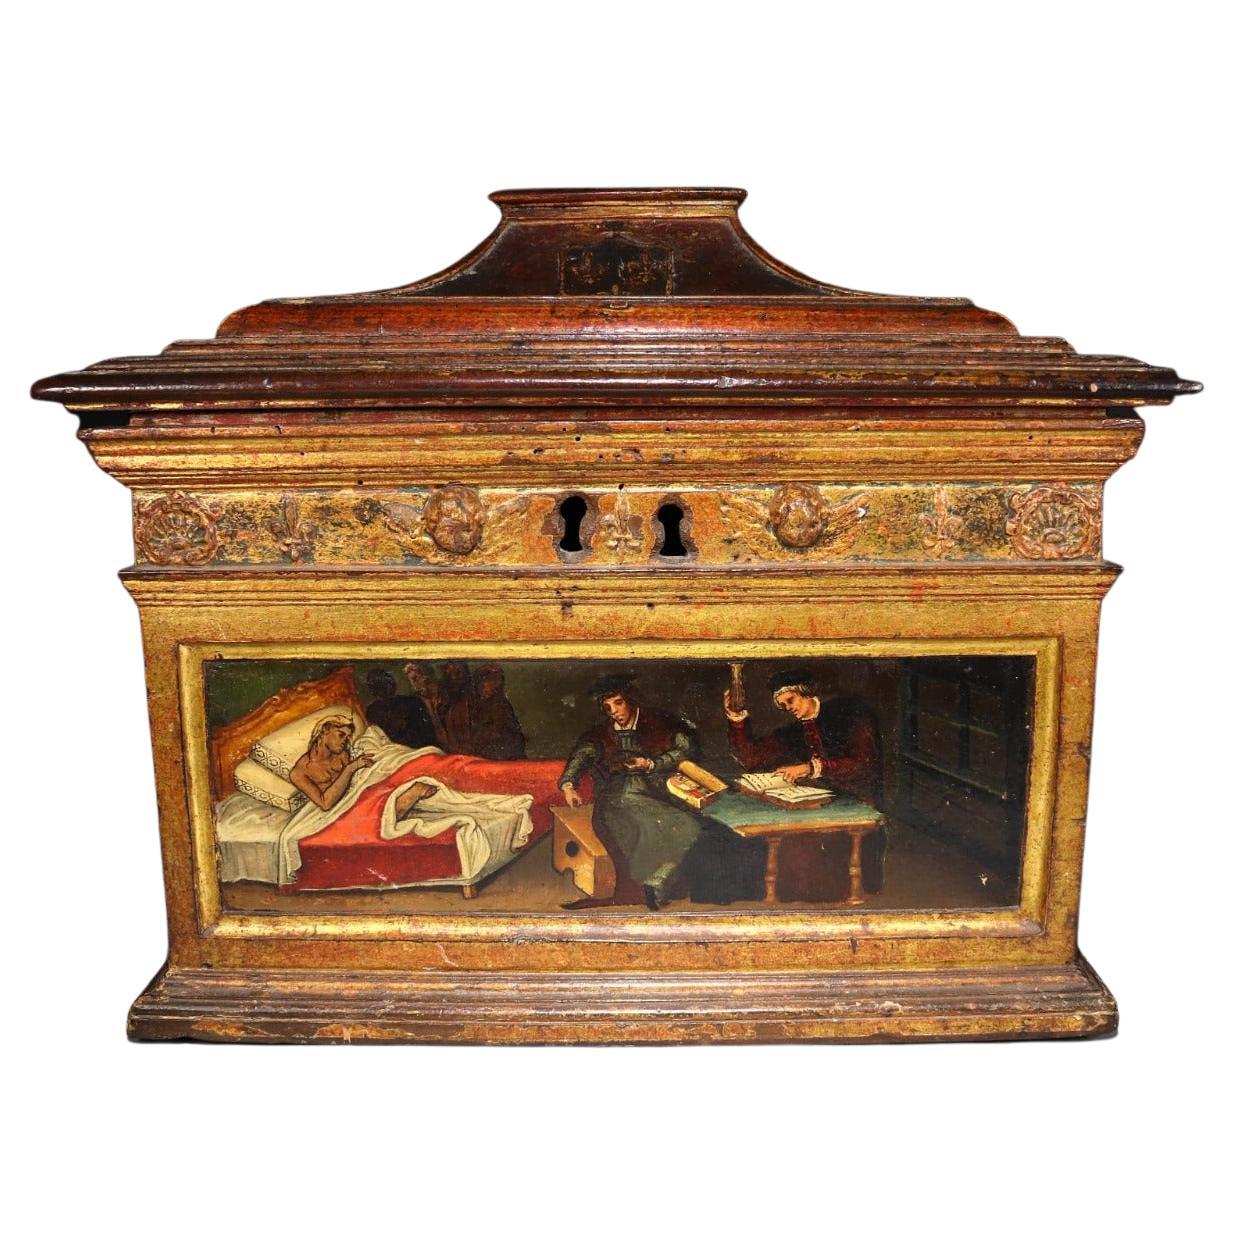 Importante boîte médicale de la Renaissance d'atelier espagnol ou italienne, vers 1550